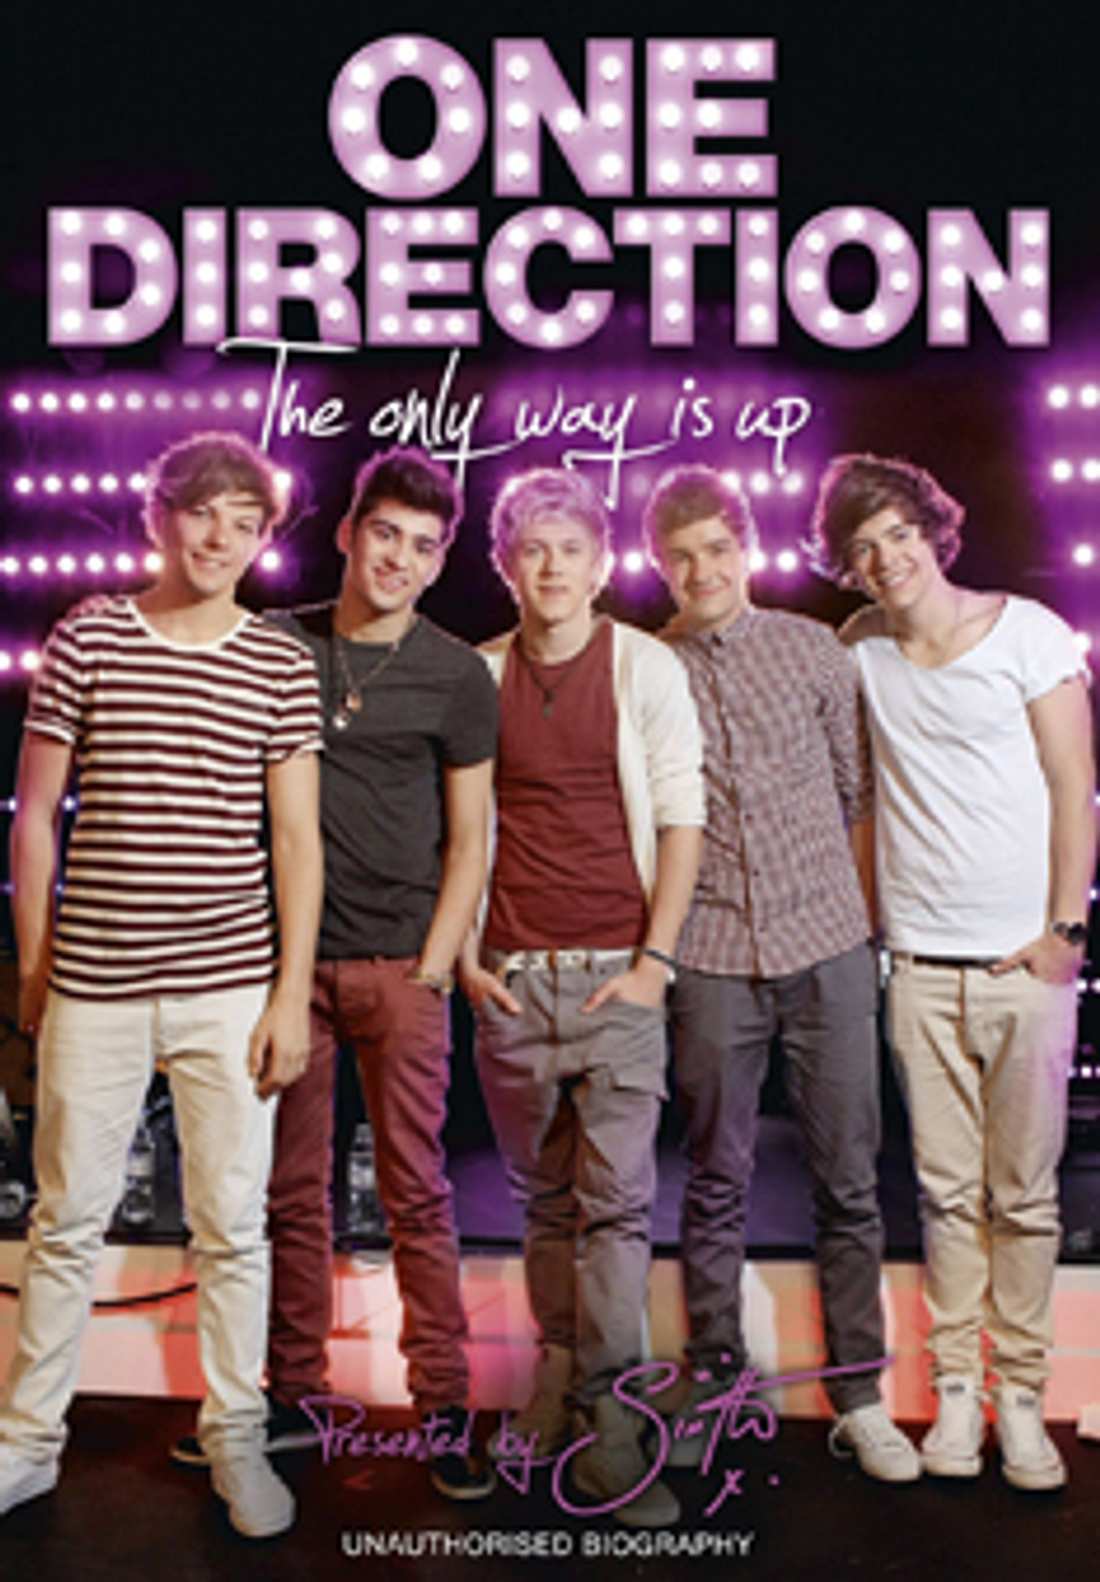 One Direction: The only way is up - die Biographie der erfolgreichen Boyband auf DVD